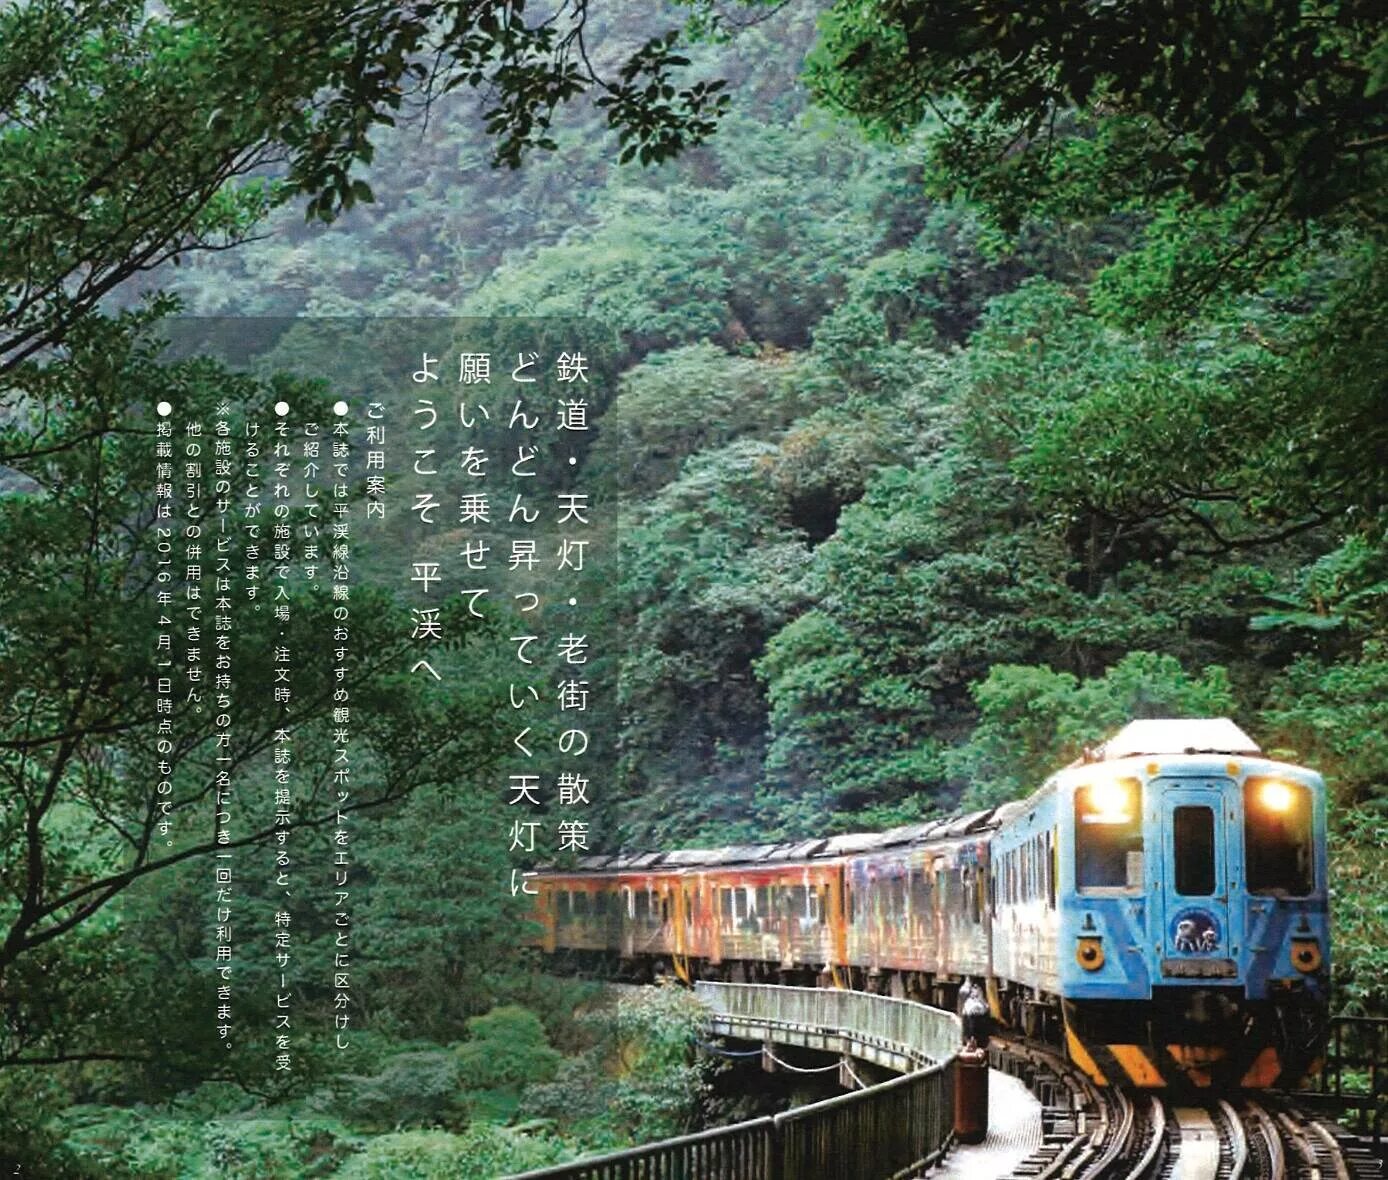 Железные дороги японии. Оита Япония железная дорога. Железная дорога через лес. Оита, Япония. Япония Кюсю пейзаж поезд. Хисатсу Япония железная дорога.